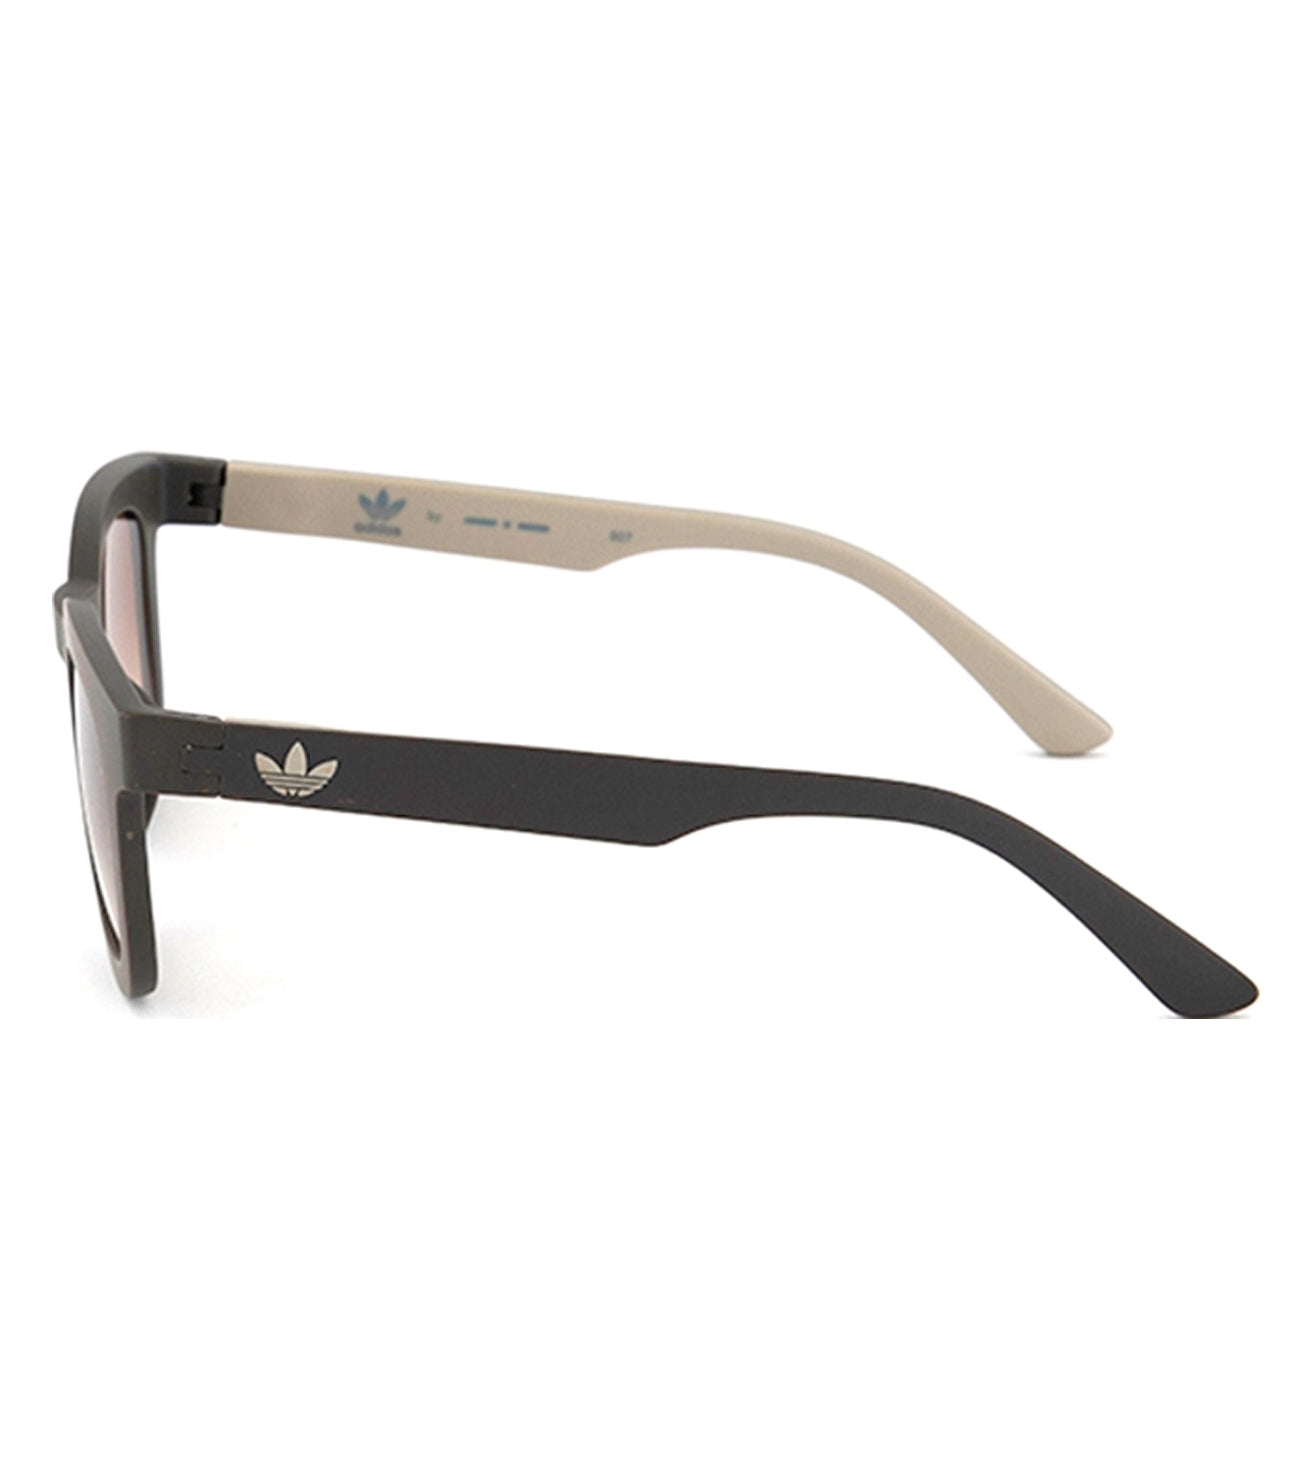 Adidas Originals Unisex Brown Square Sunglasses